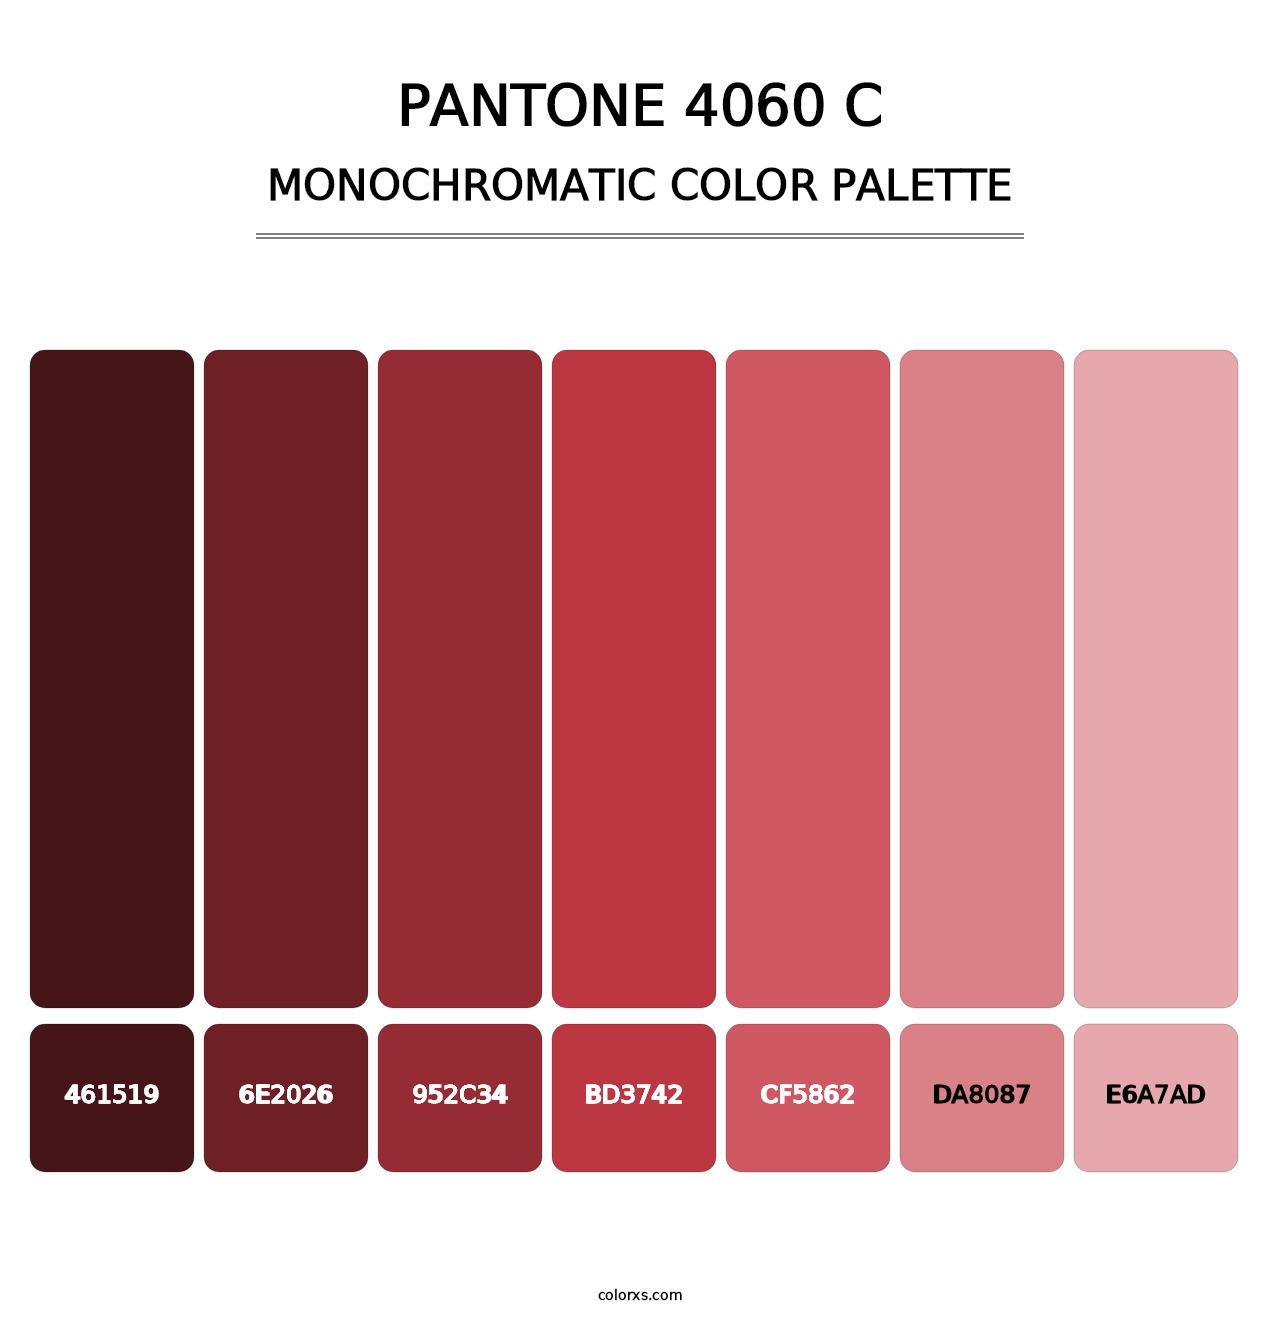 PANTONE 4060 C - Monochromatic Color Palette